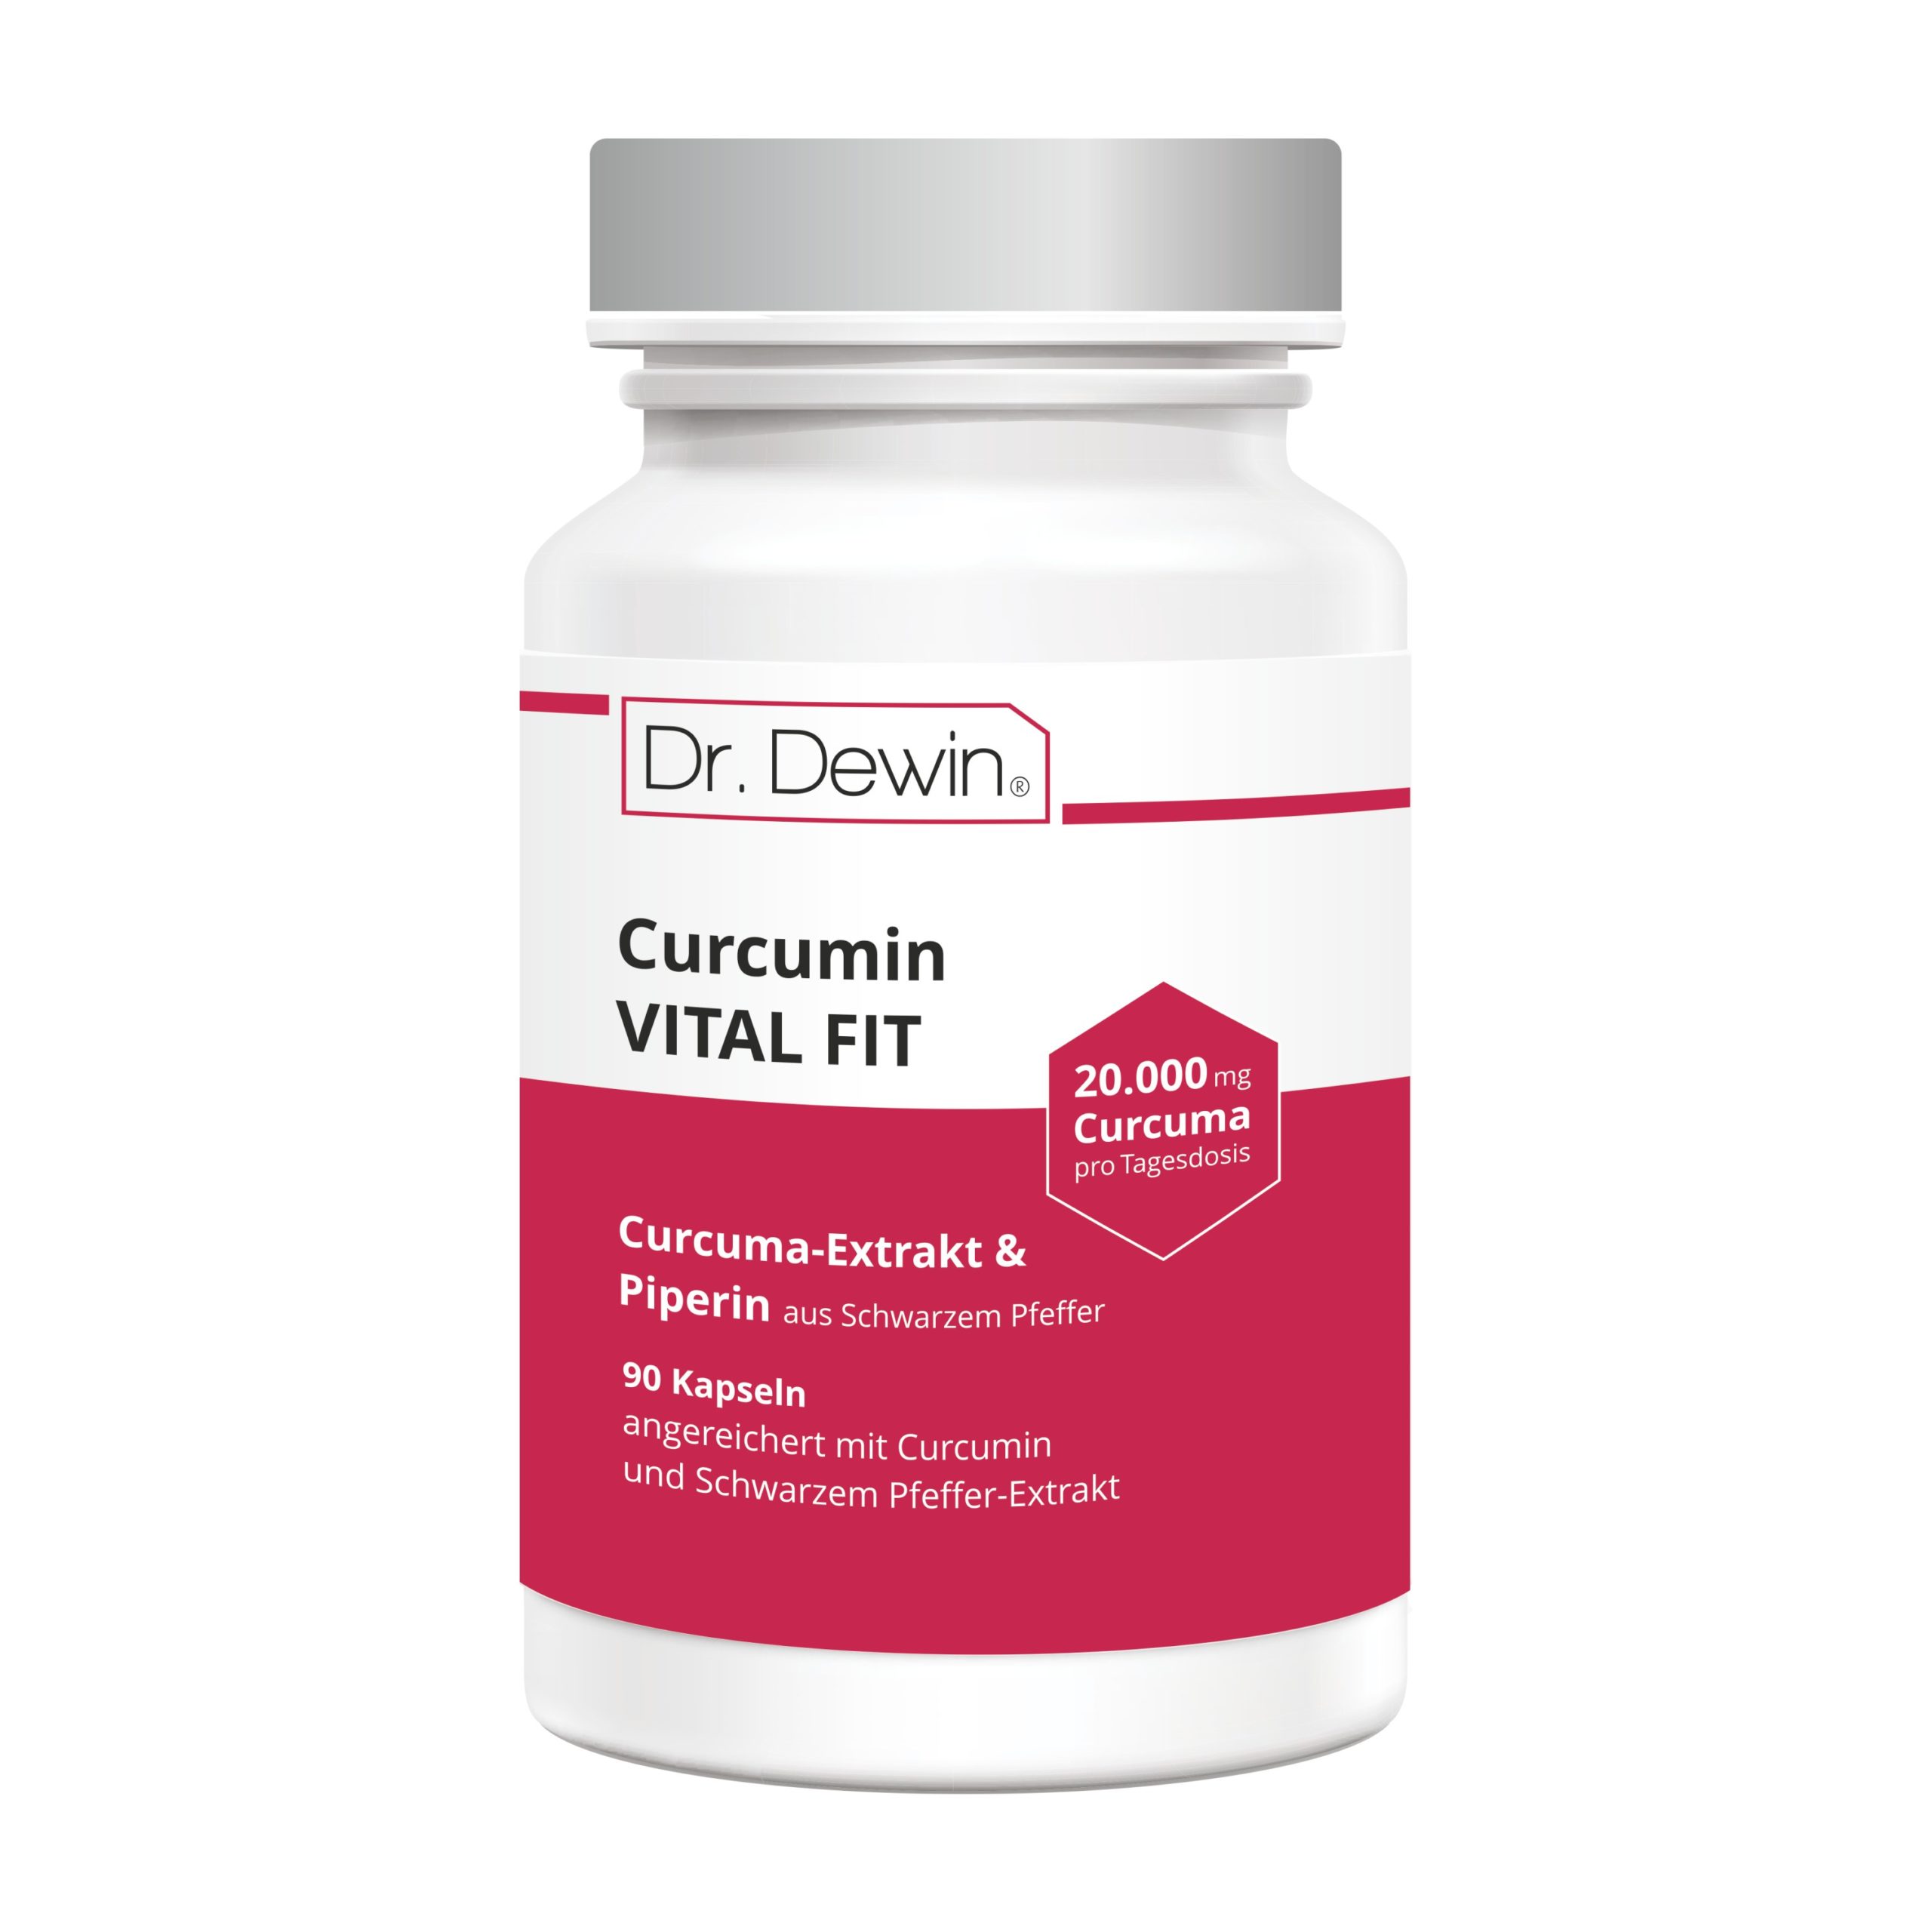 Dr. Dewin® Curcumin VITAL FIT